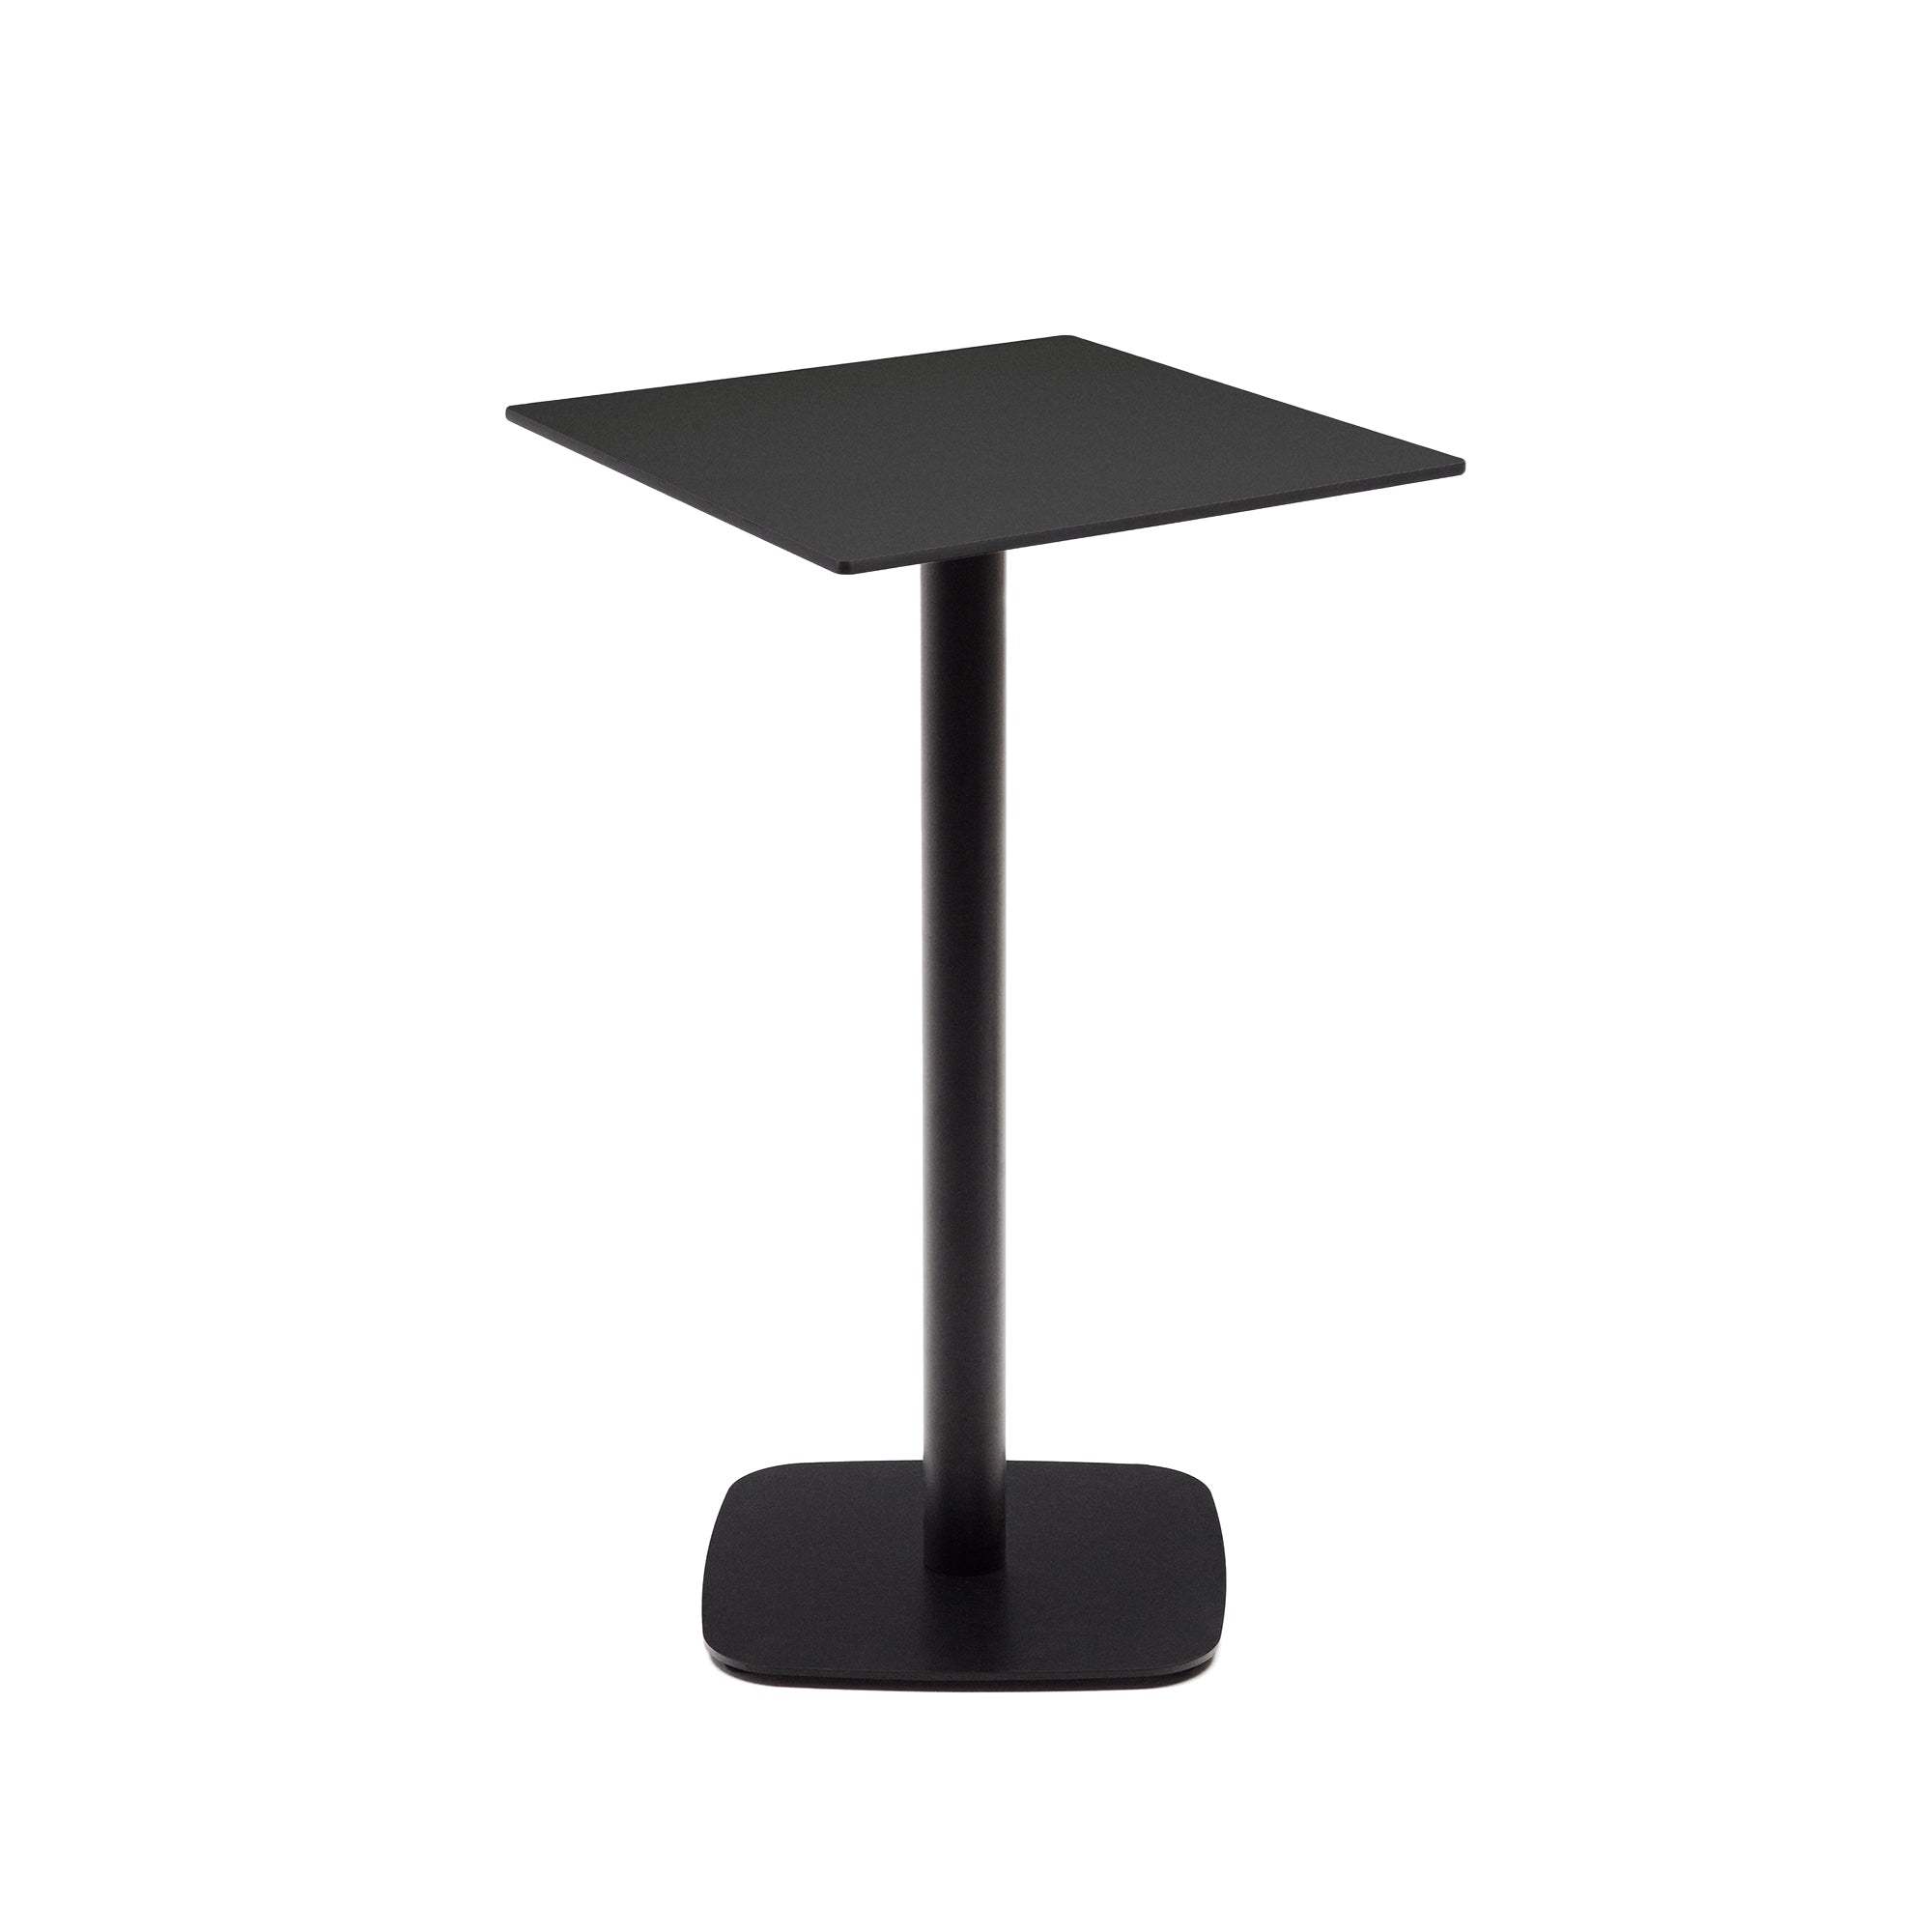 Dina magas kültéri asztal fekete színben, fémlábbal, festett fekete kivitelben, 60 x 60 x 96 cm